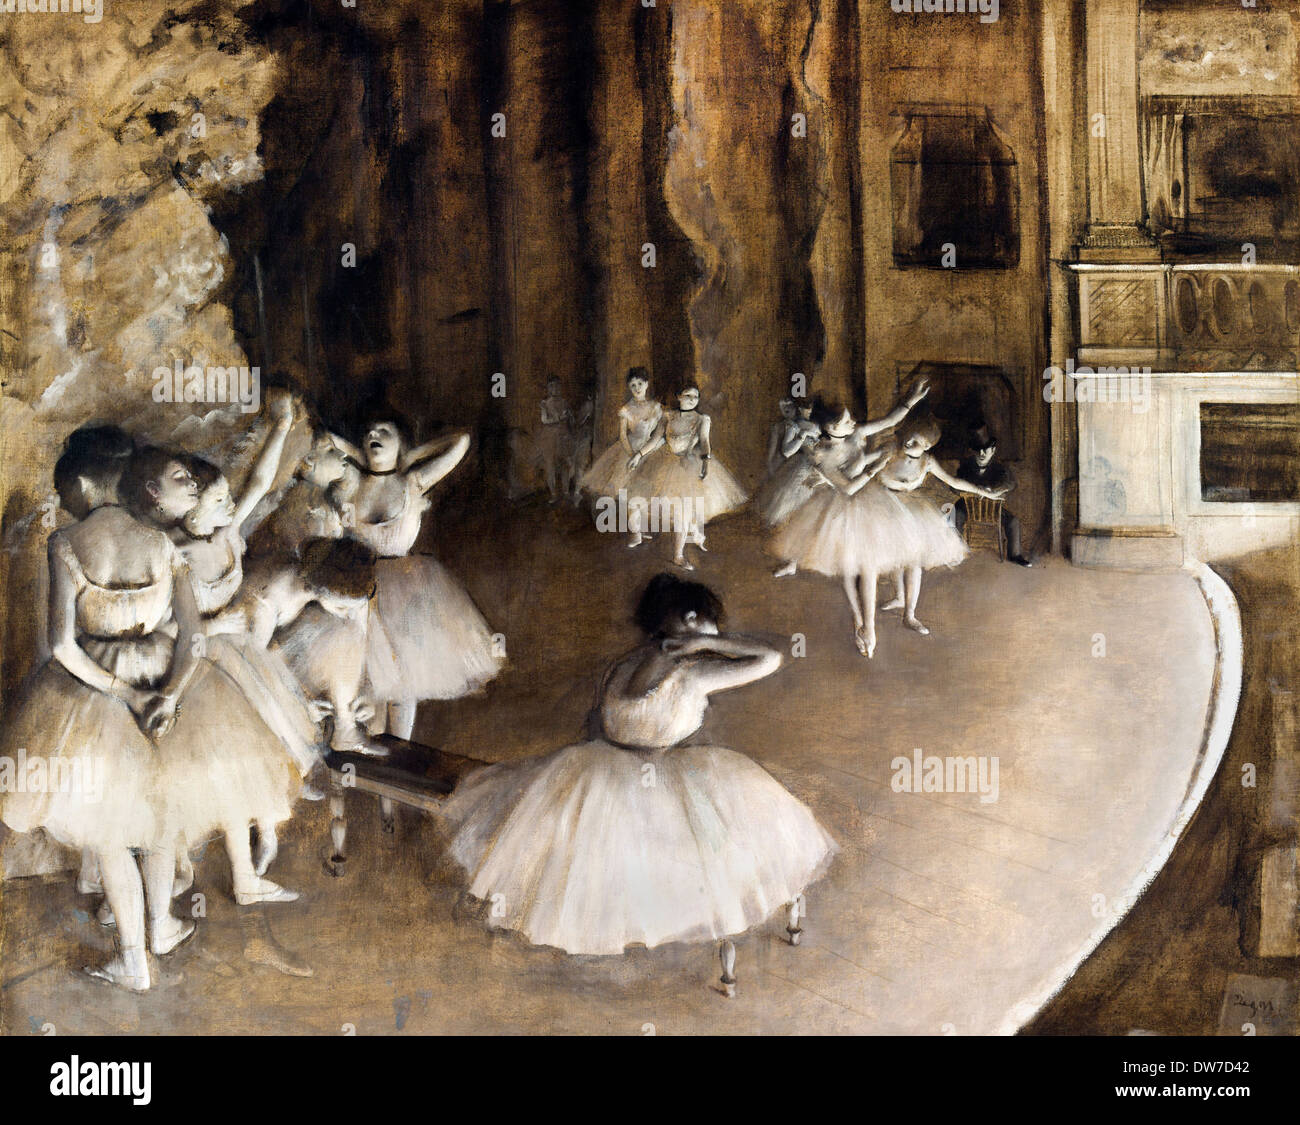 Edgar Degas, Ballett Probe auf Bühne 1874 Öl auf Leinwand. Musée d ' Orsay, Paris, Frankreich. Stockfoto